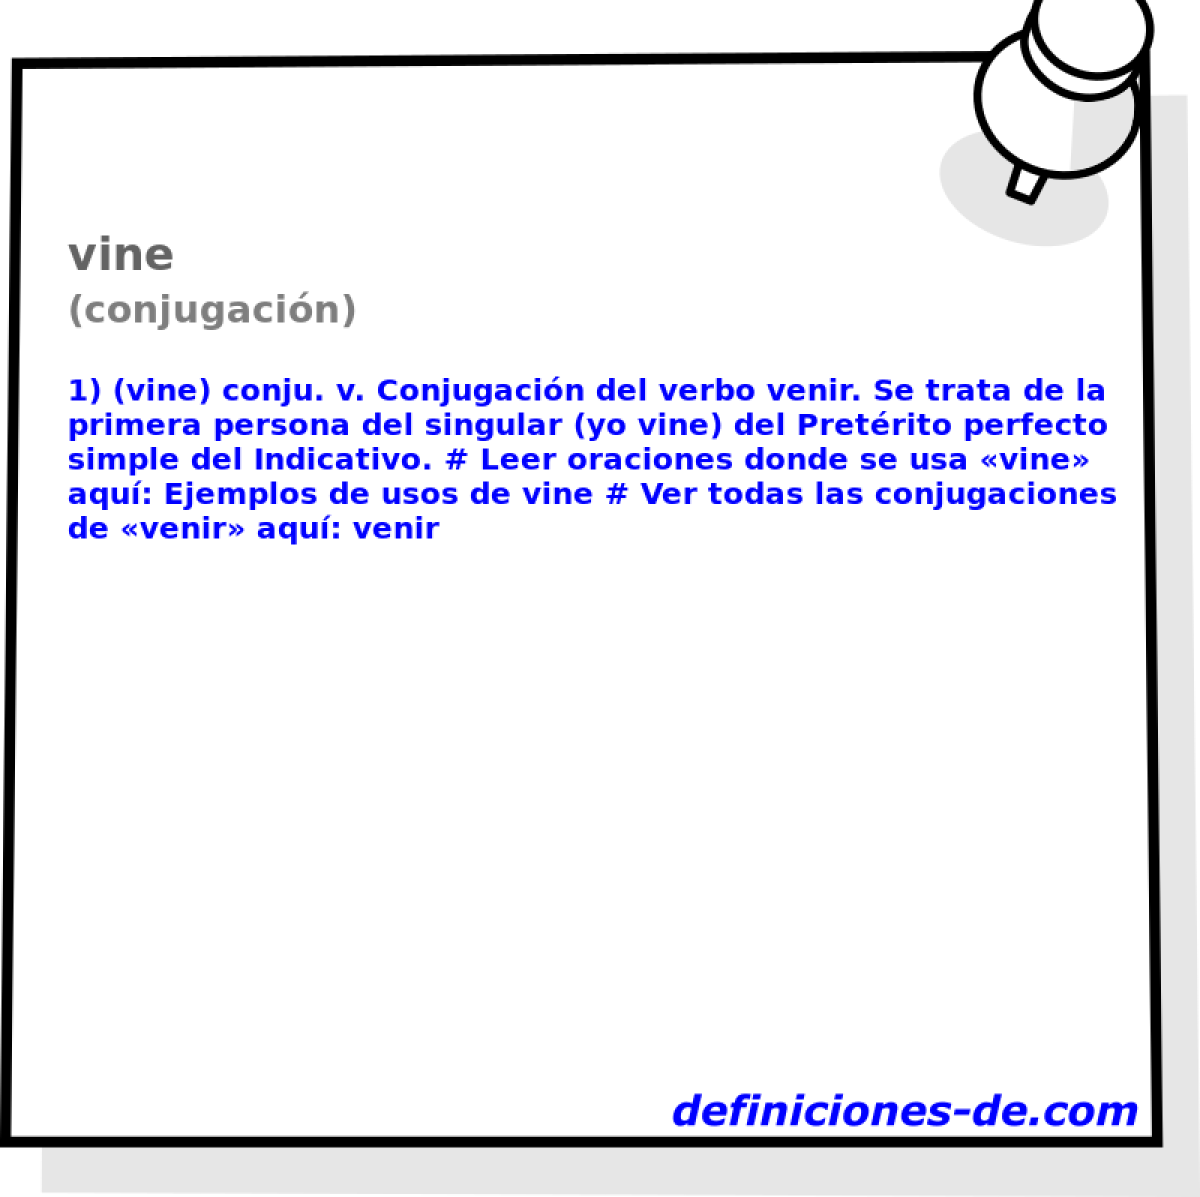 vine (conjugacin)